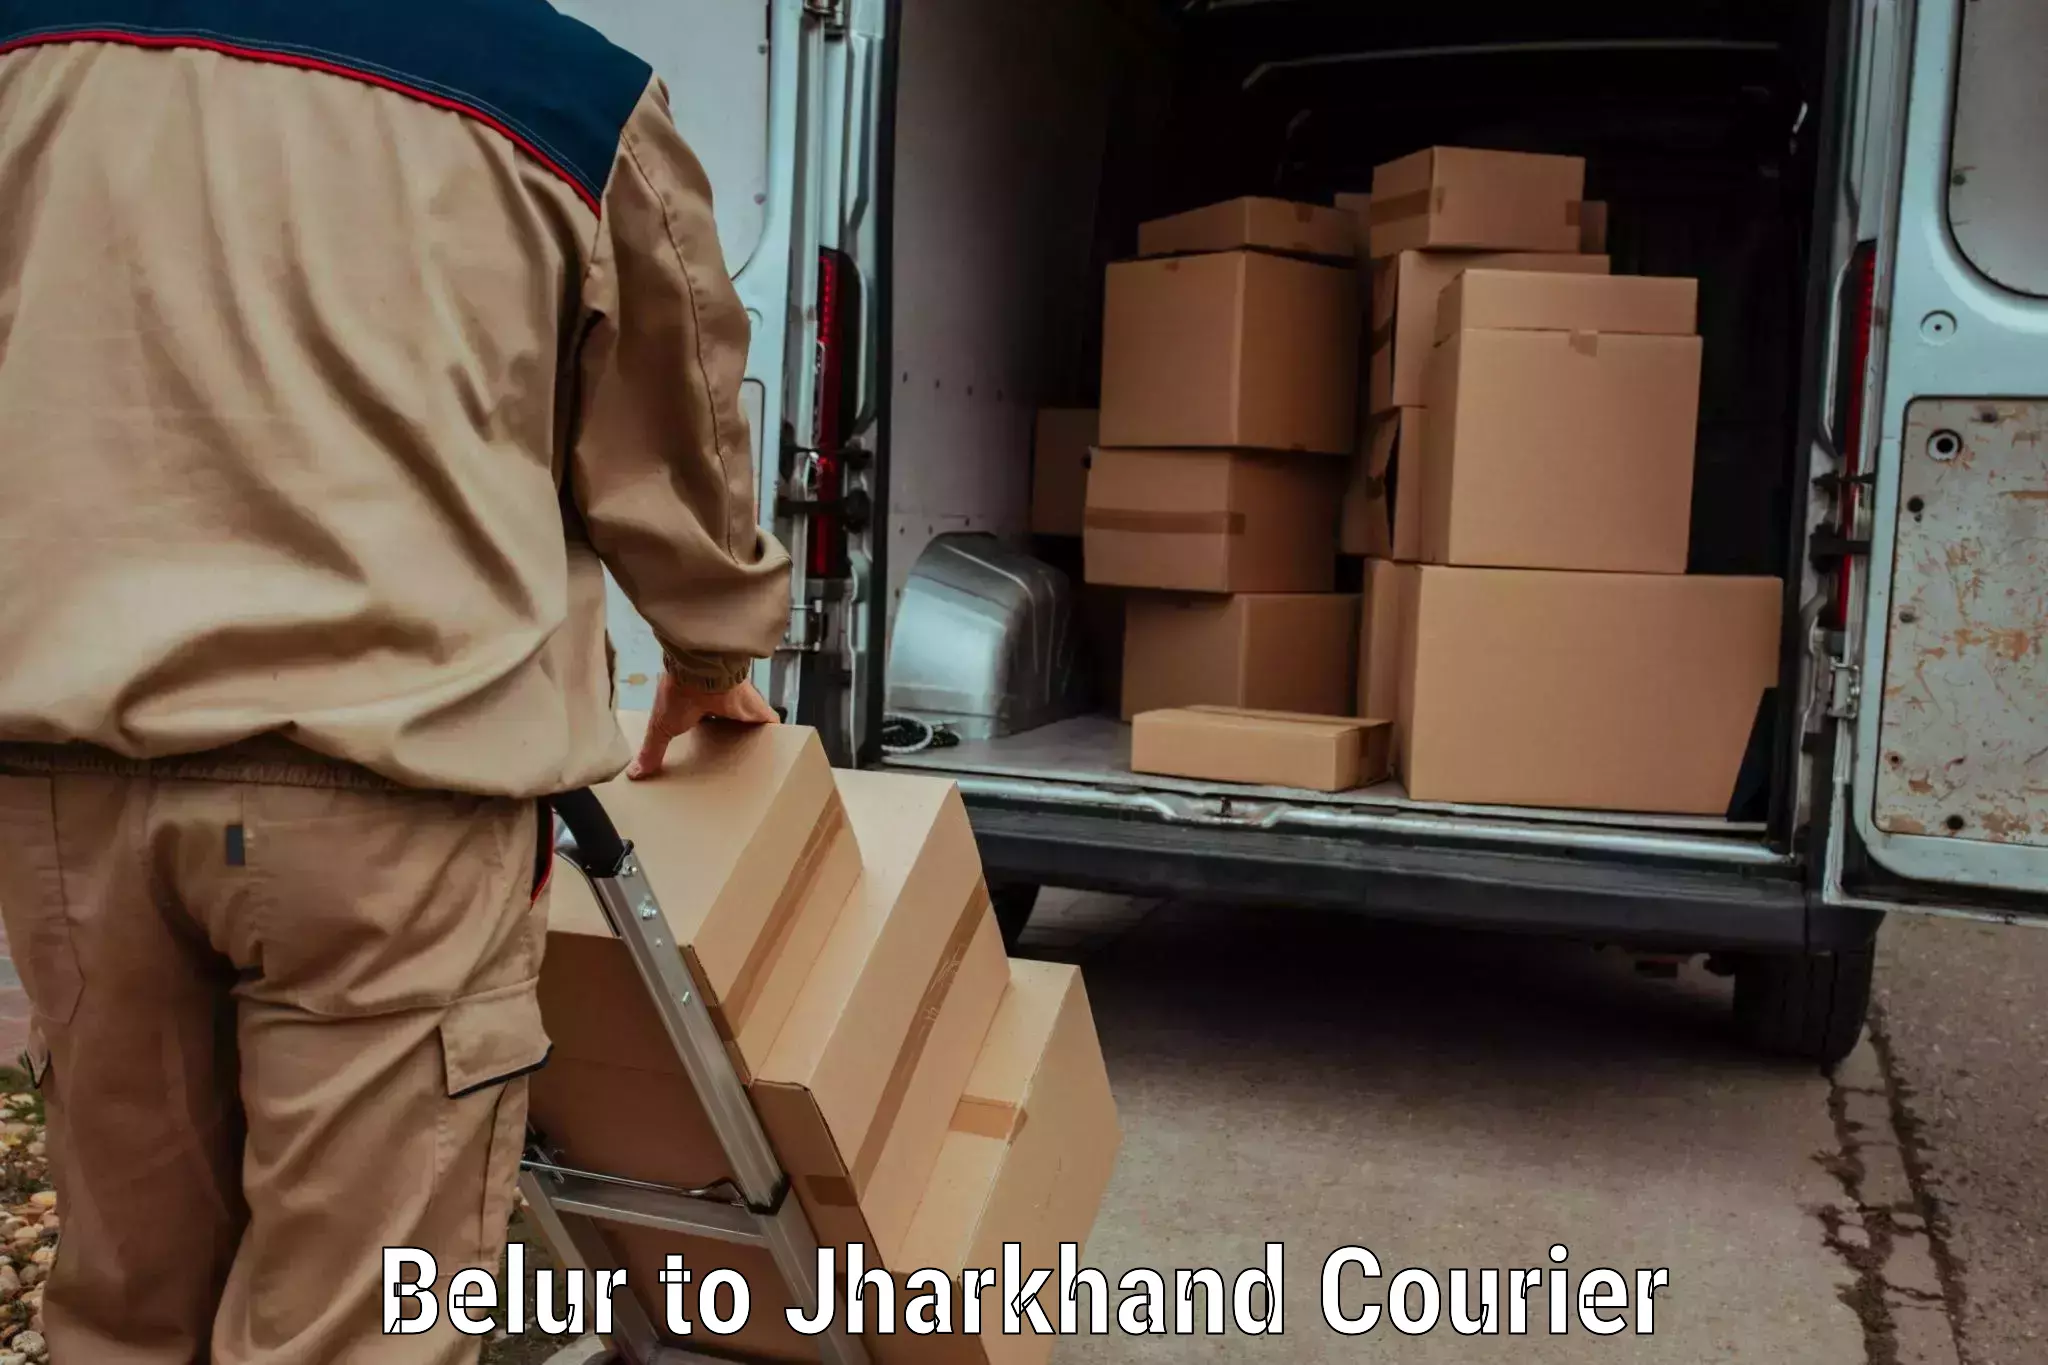 Efficient parcel service Belur to Kedla